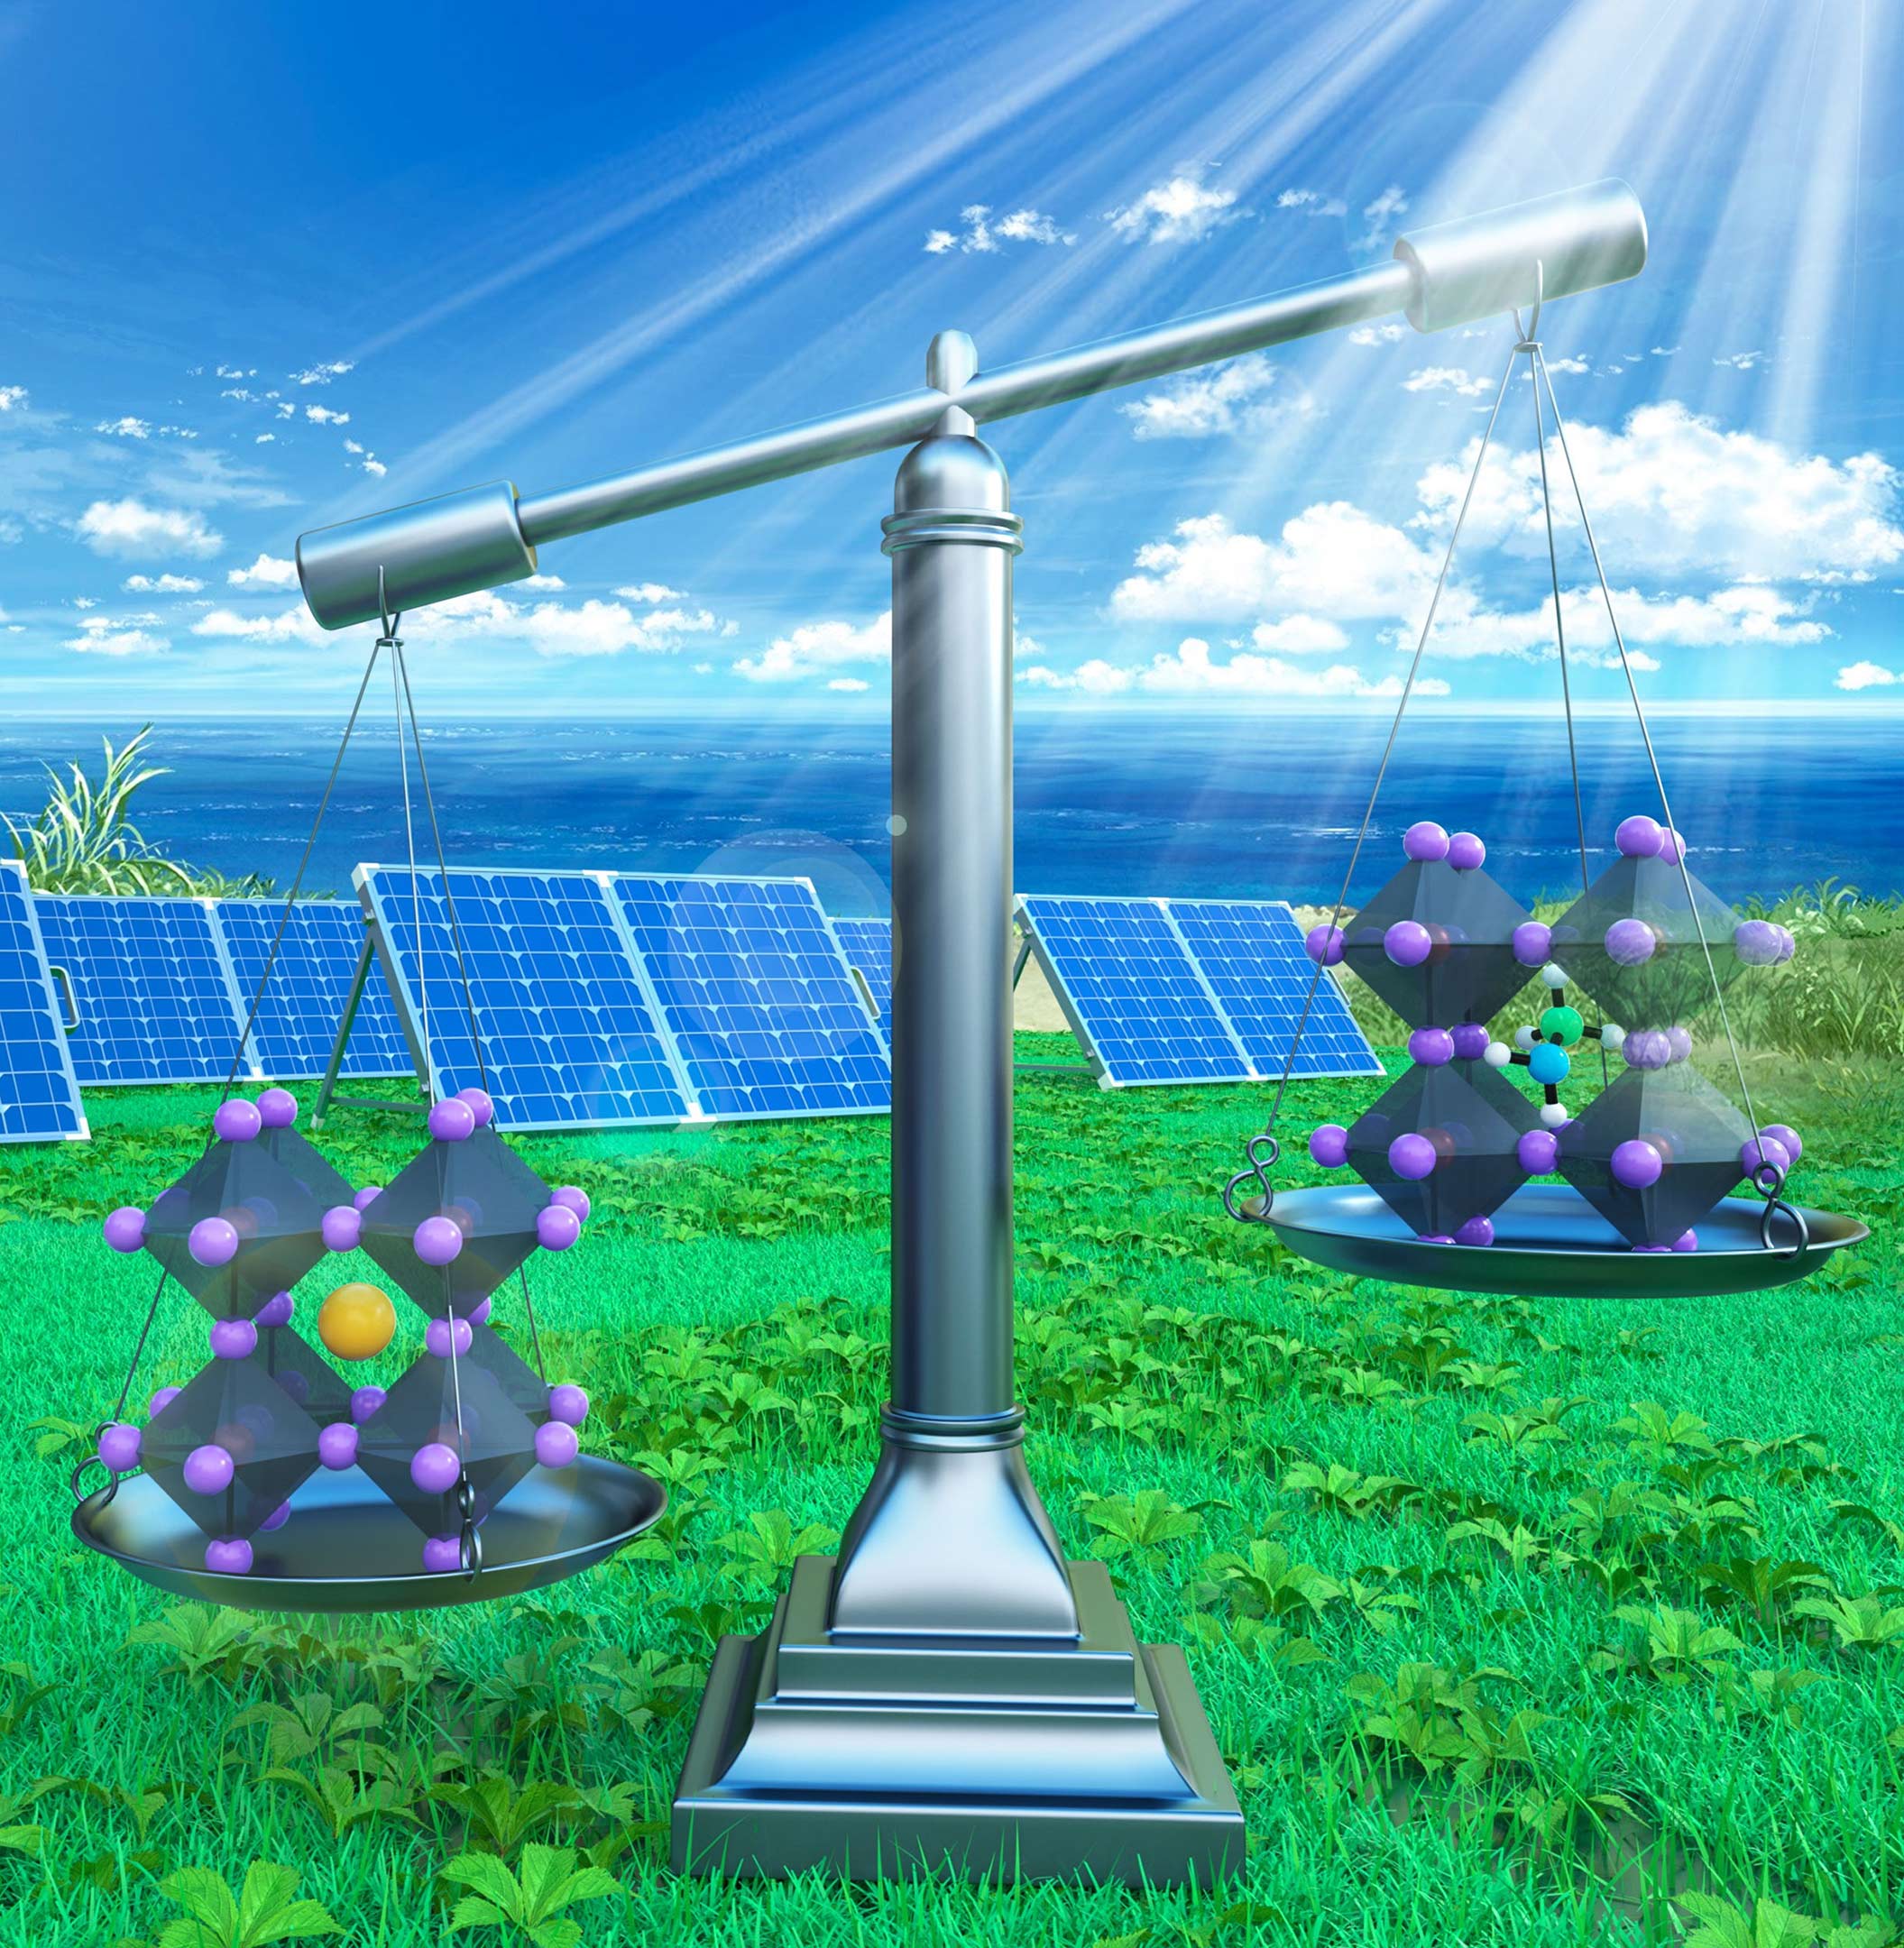 Noile cercetări arată o mare promisiune pentru îmbunătățirea eficienței celulelor solare - ProRally.ro